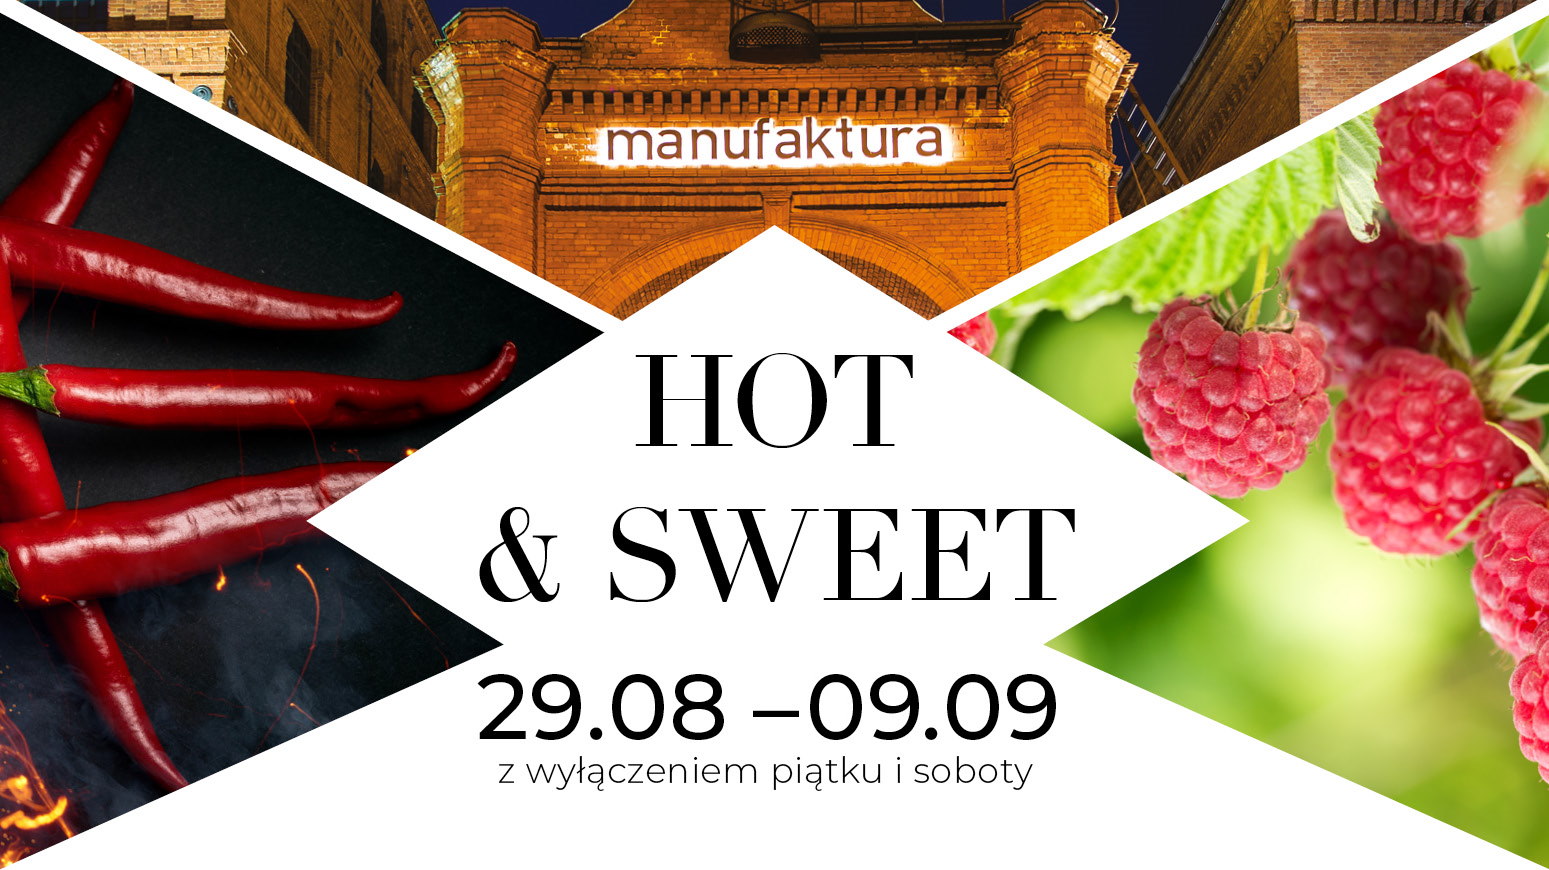 Grafika przedstawia plakat reklamujący festiwal kulinarny Hot&Sweet w Manufakturze.